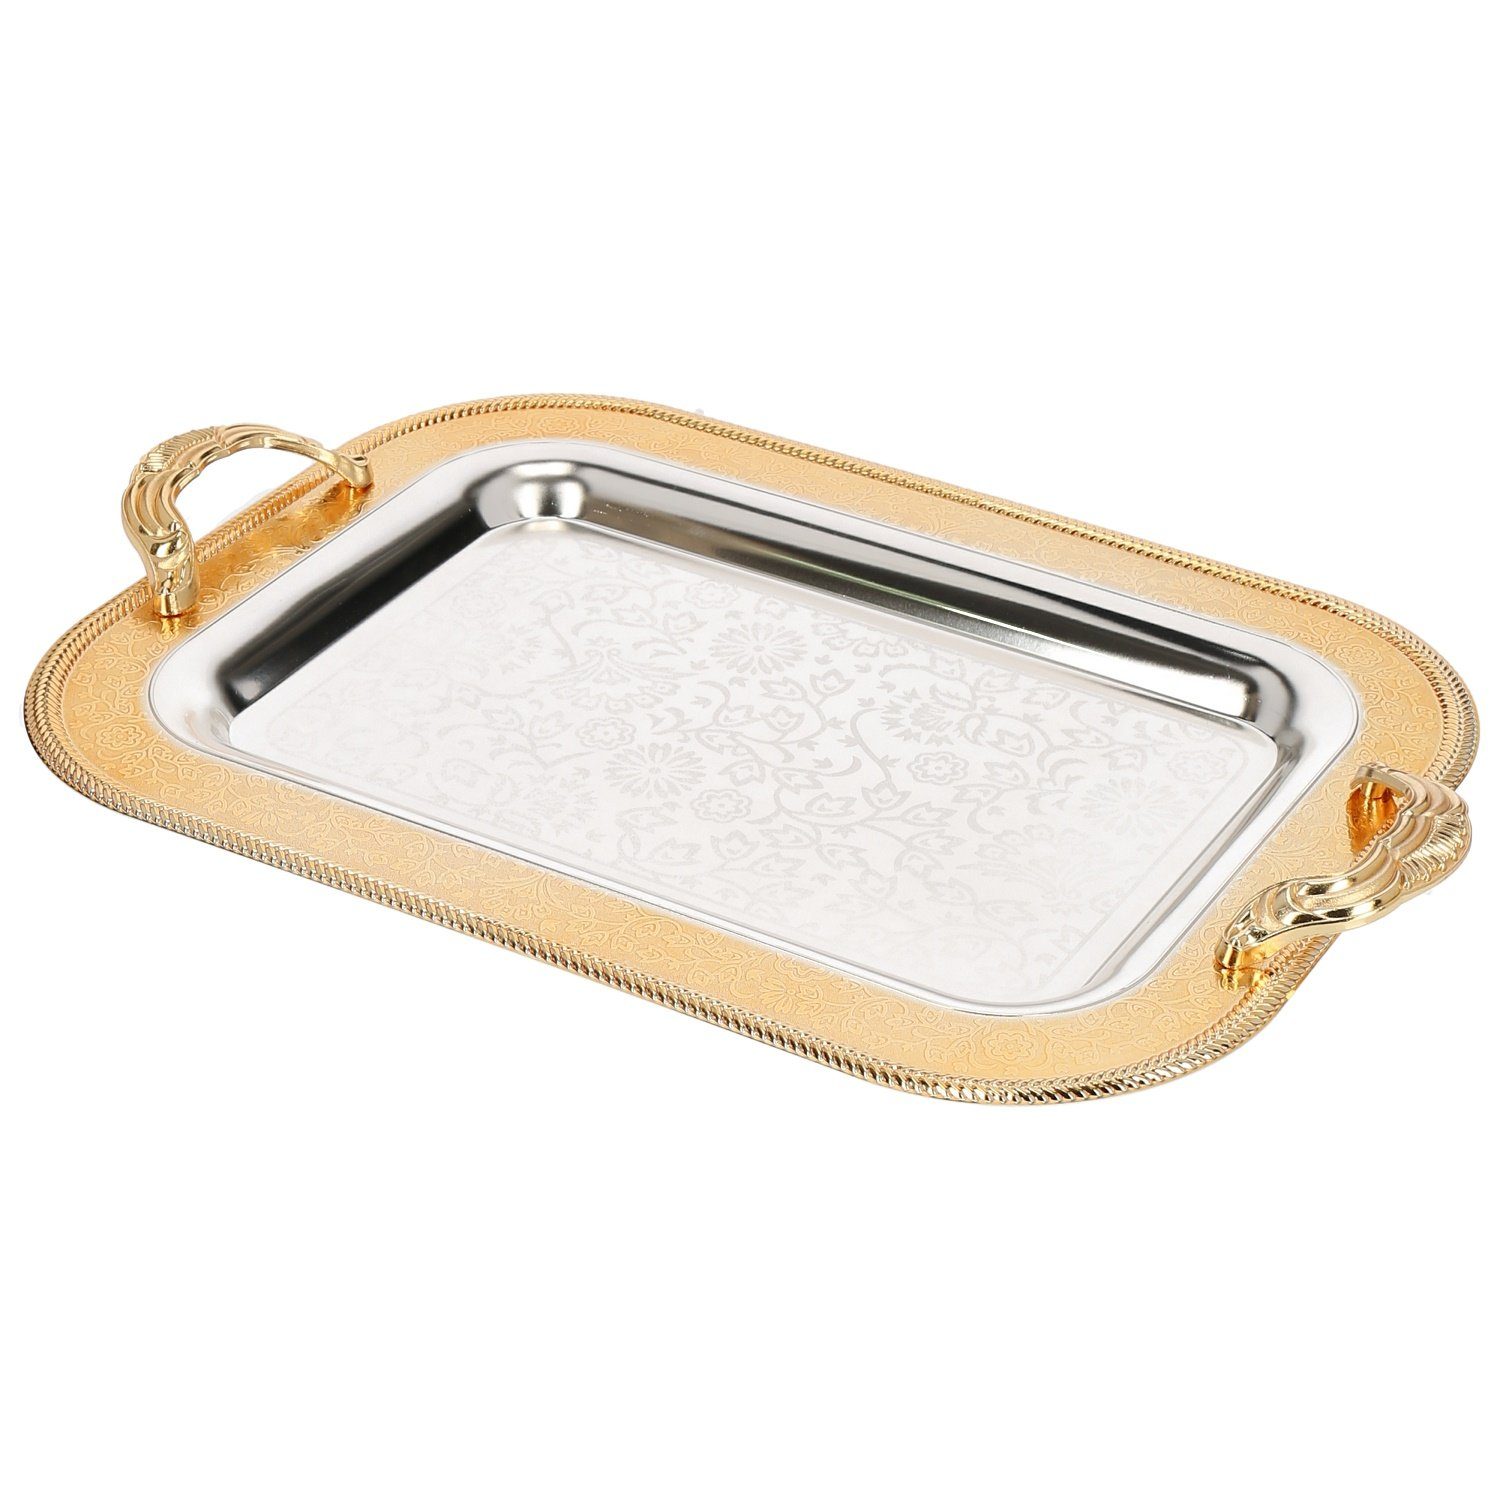 Almina Tablett 2-Teilig Gold/Silber Metallbrett Servierttablett aus Edelstahl 18/10, (2-tlg) Motiv 9 Gold